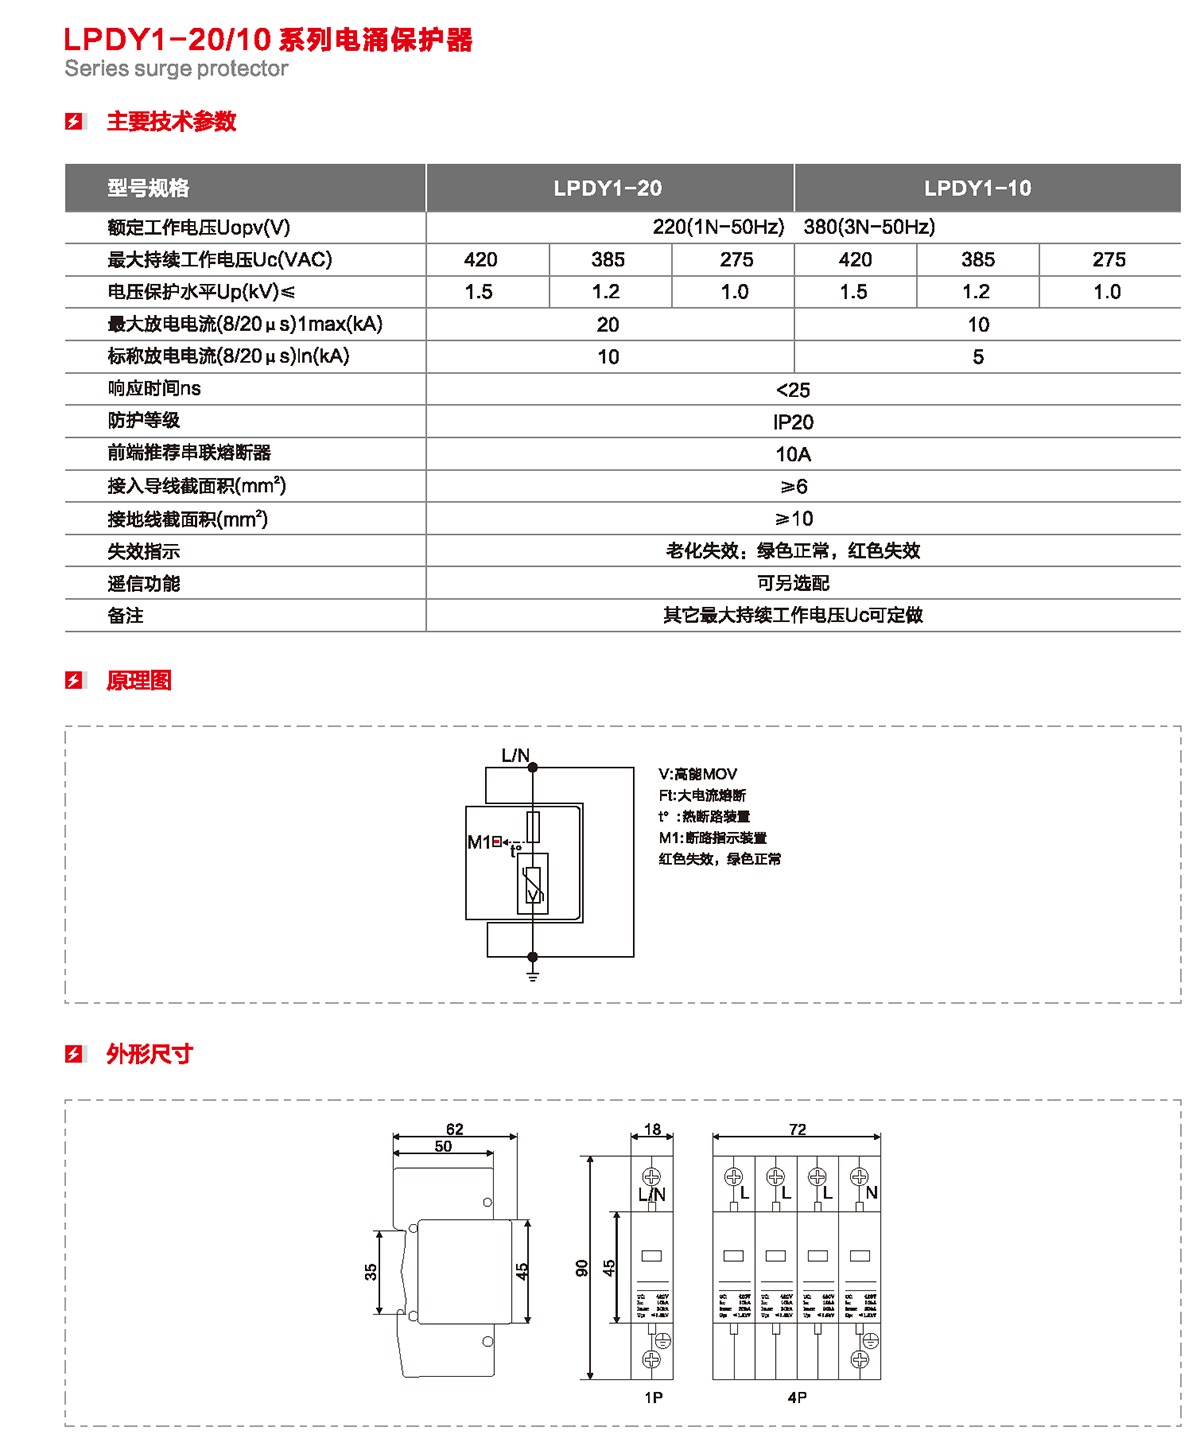 LPDY1-20/10系列電涌保護器產品詳情